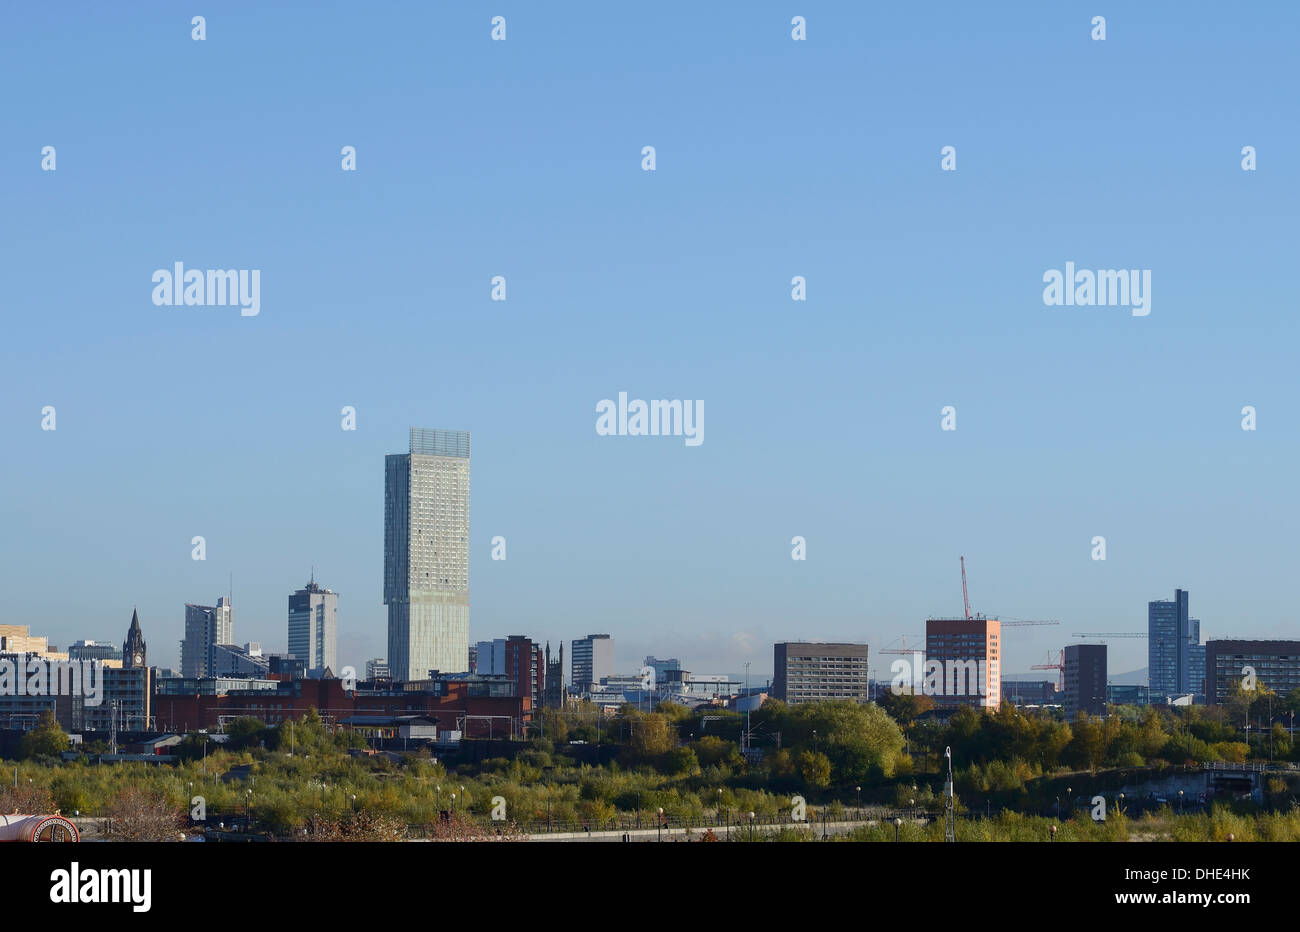 Le centre-ville de Manchester skyline y compris la Beetham Tower Banque D'Images